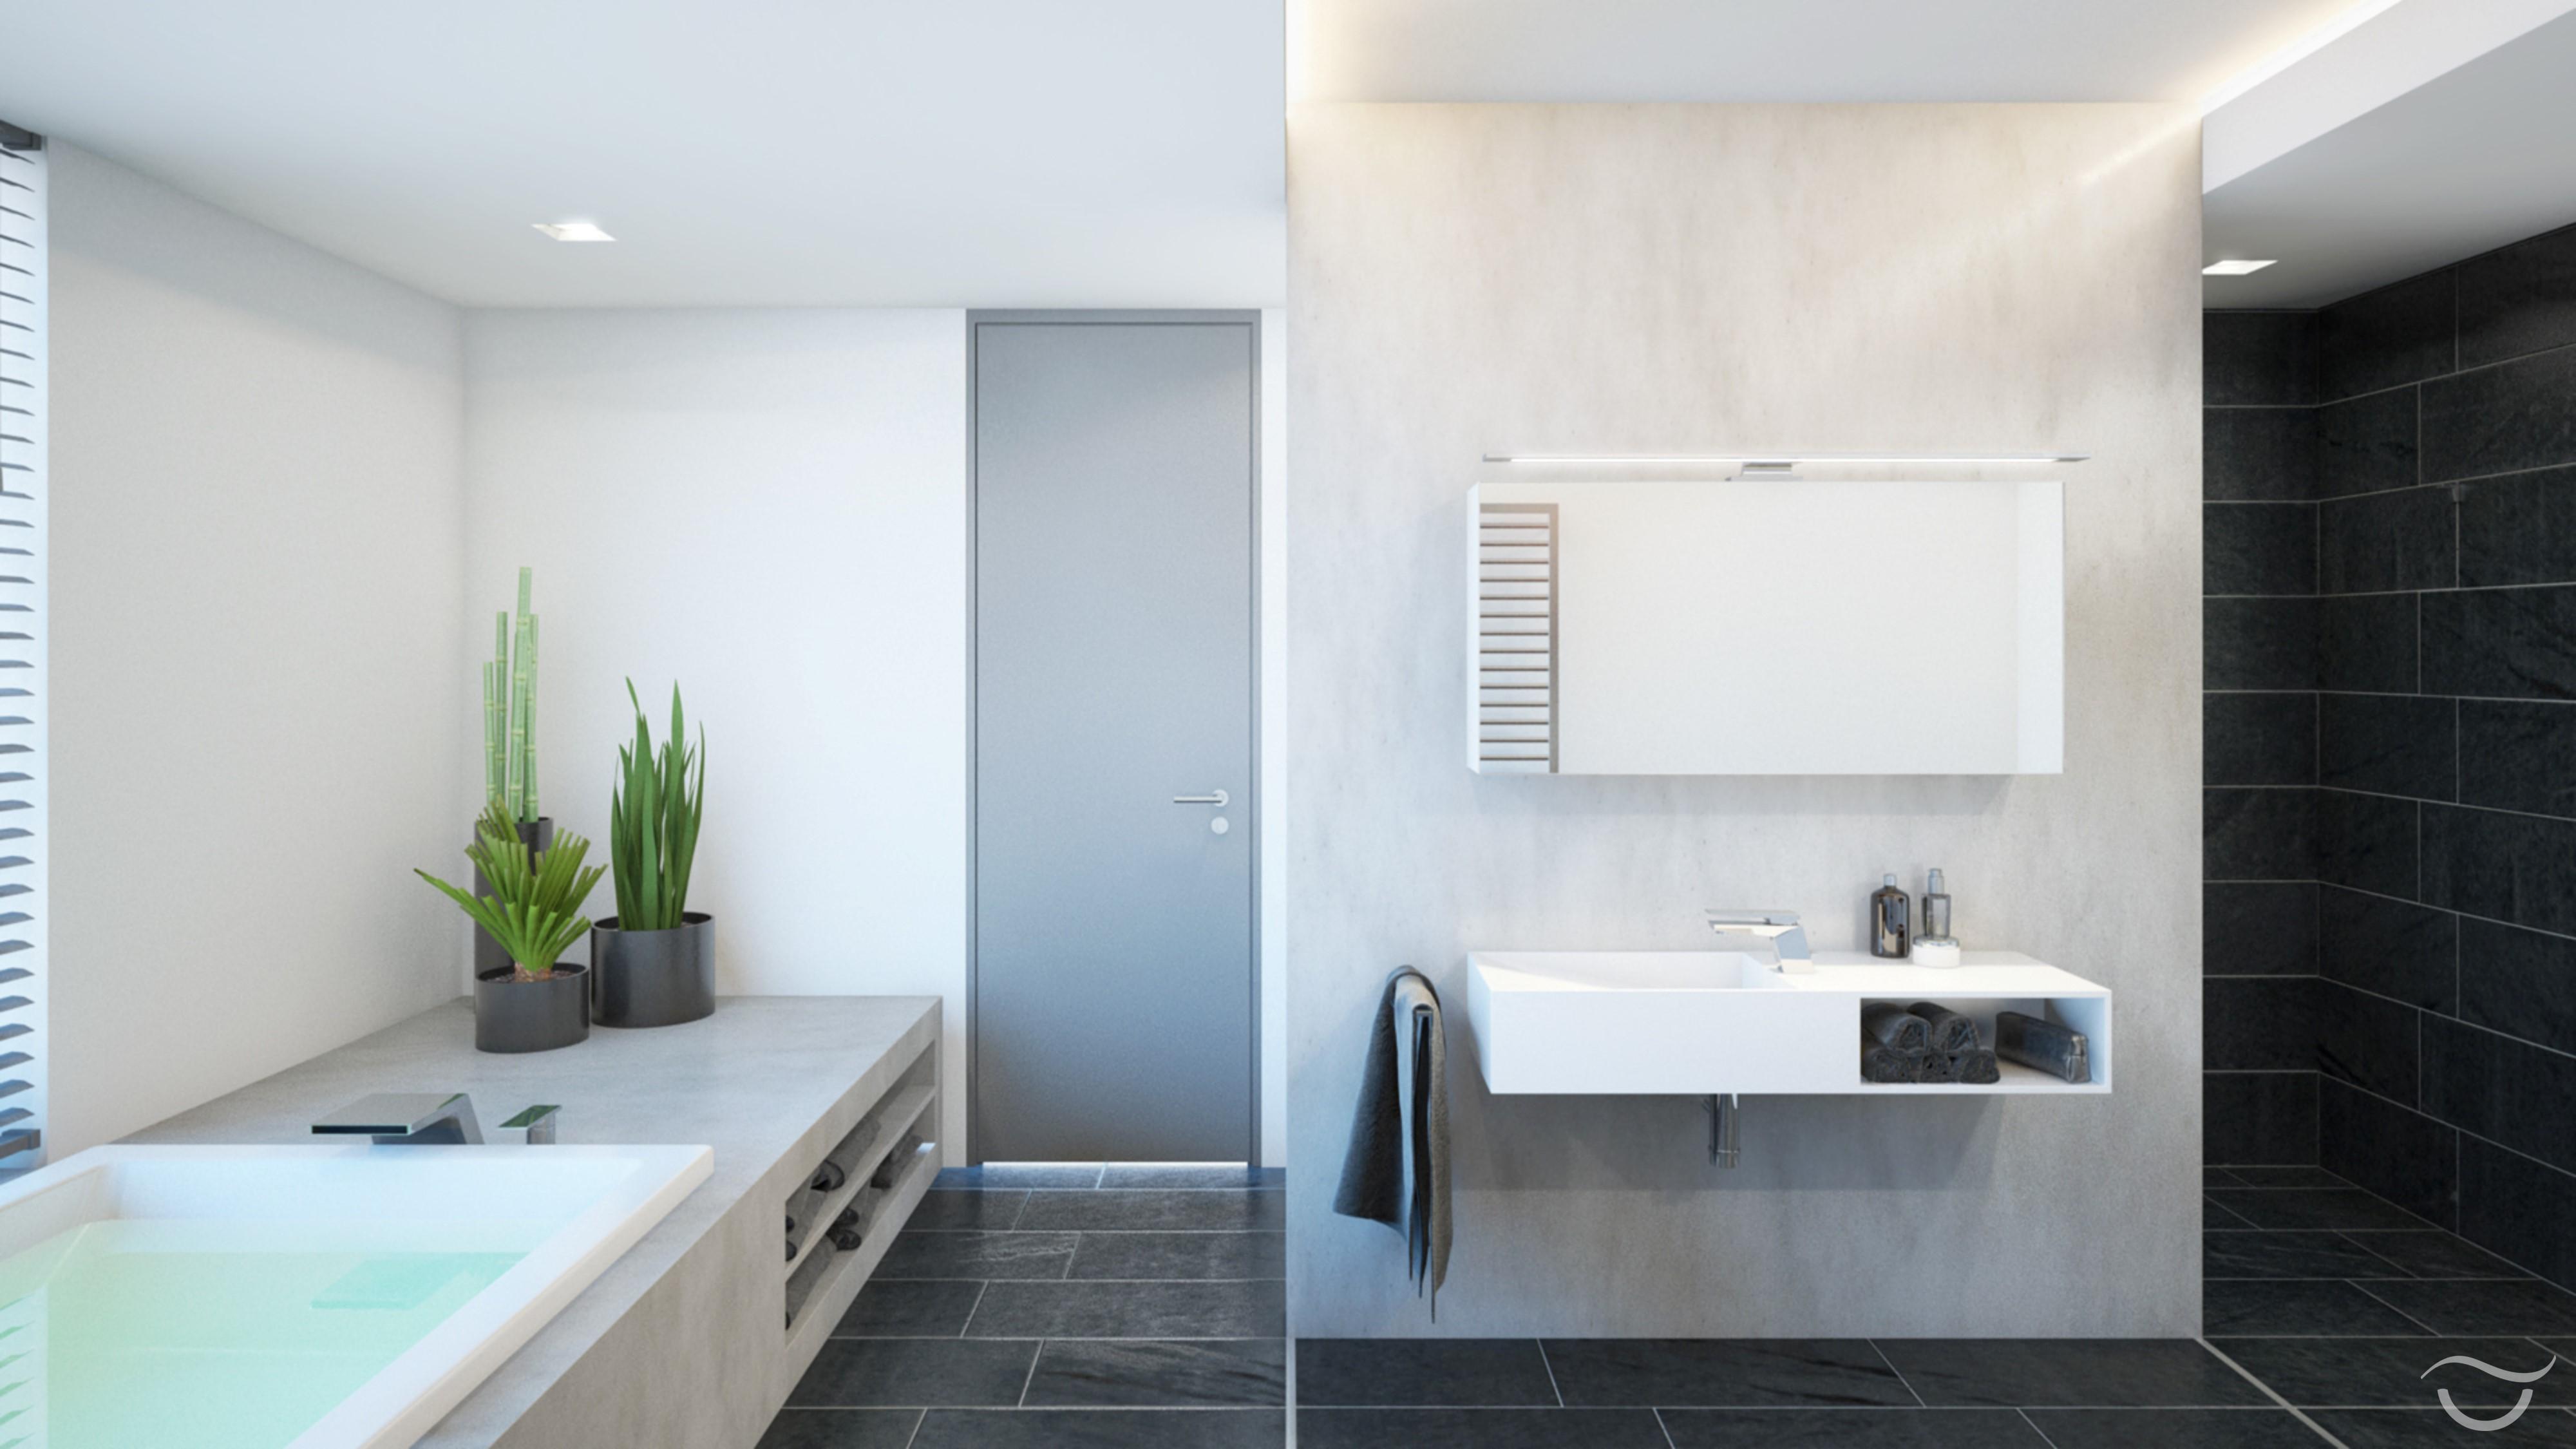 Eckige Formen vermitteln Chic und Moderne #badezimmerschrank #waschbecken #extravagant #stylisch ©Banovo GmbH